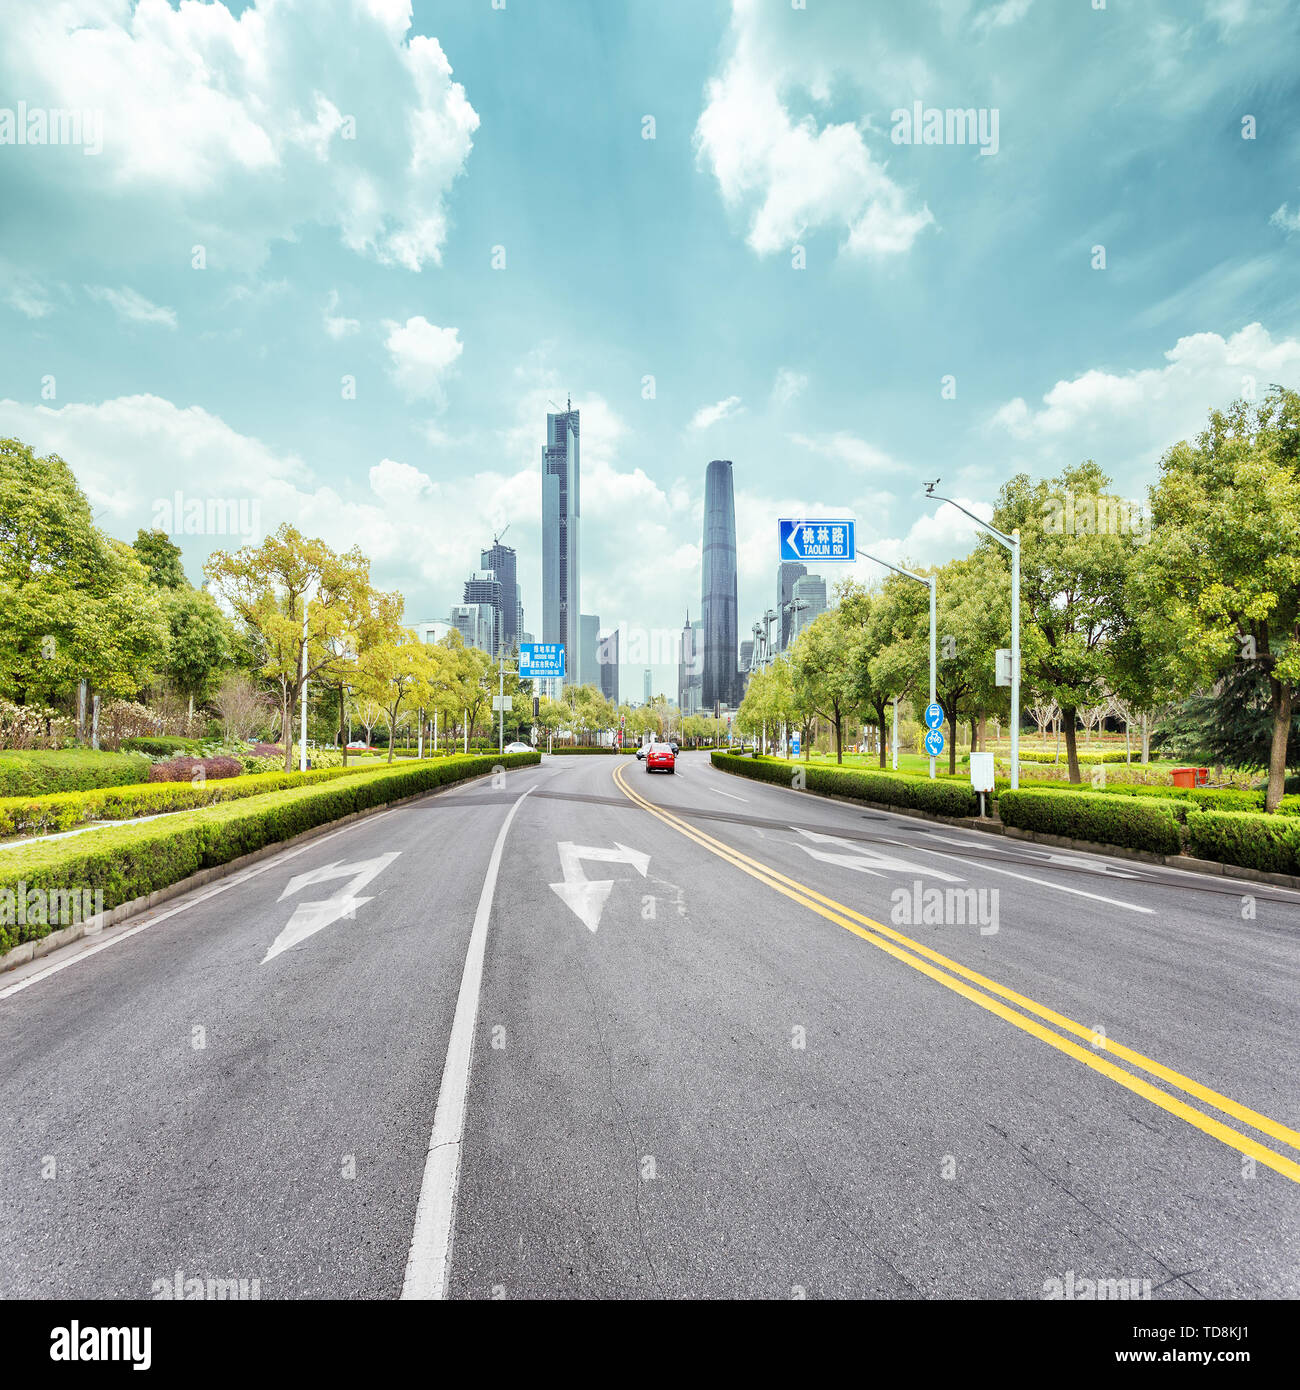 Carretera de asfalto y rascacielos de la ciudad moderna Foto de stock